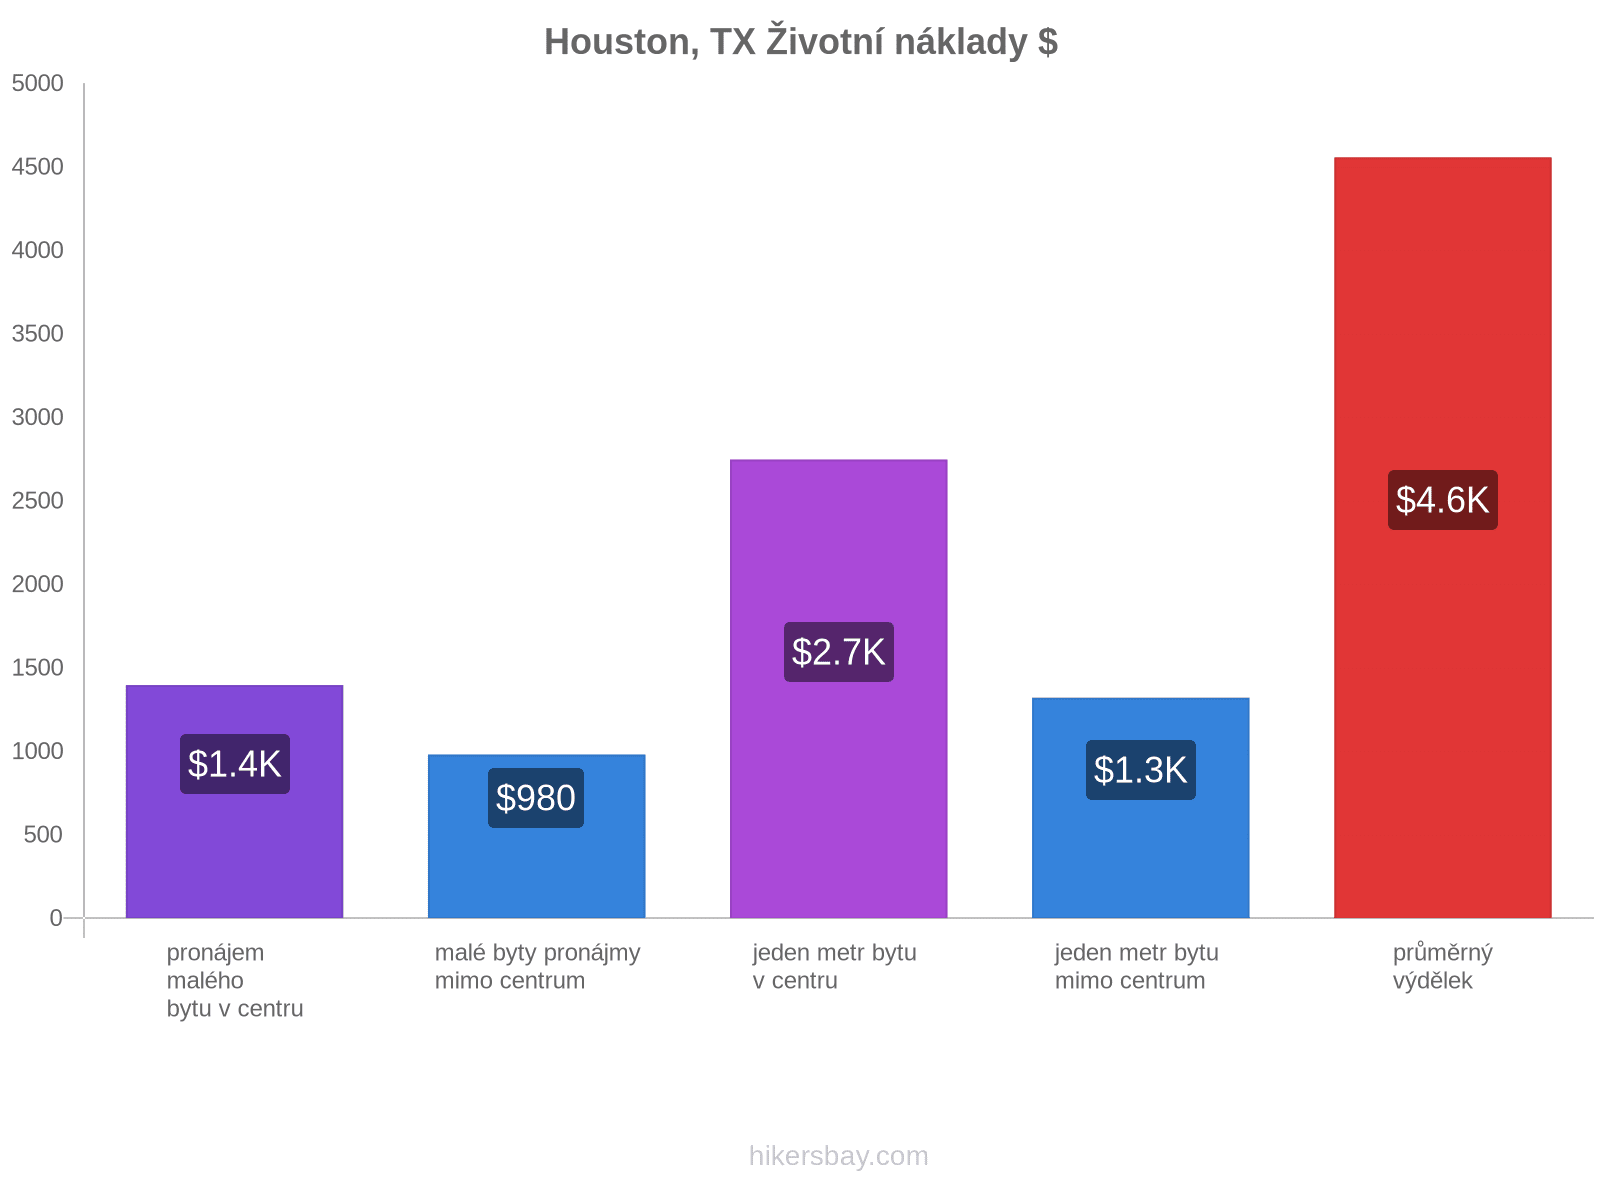 Houston, TX životní náklady hikersbay.com